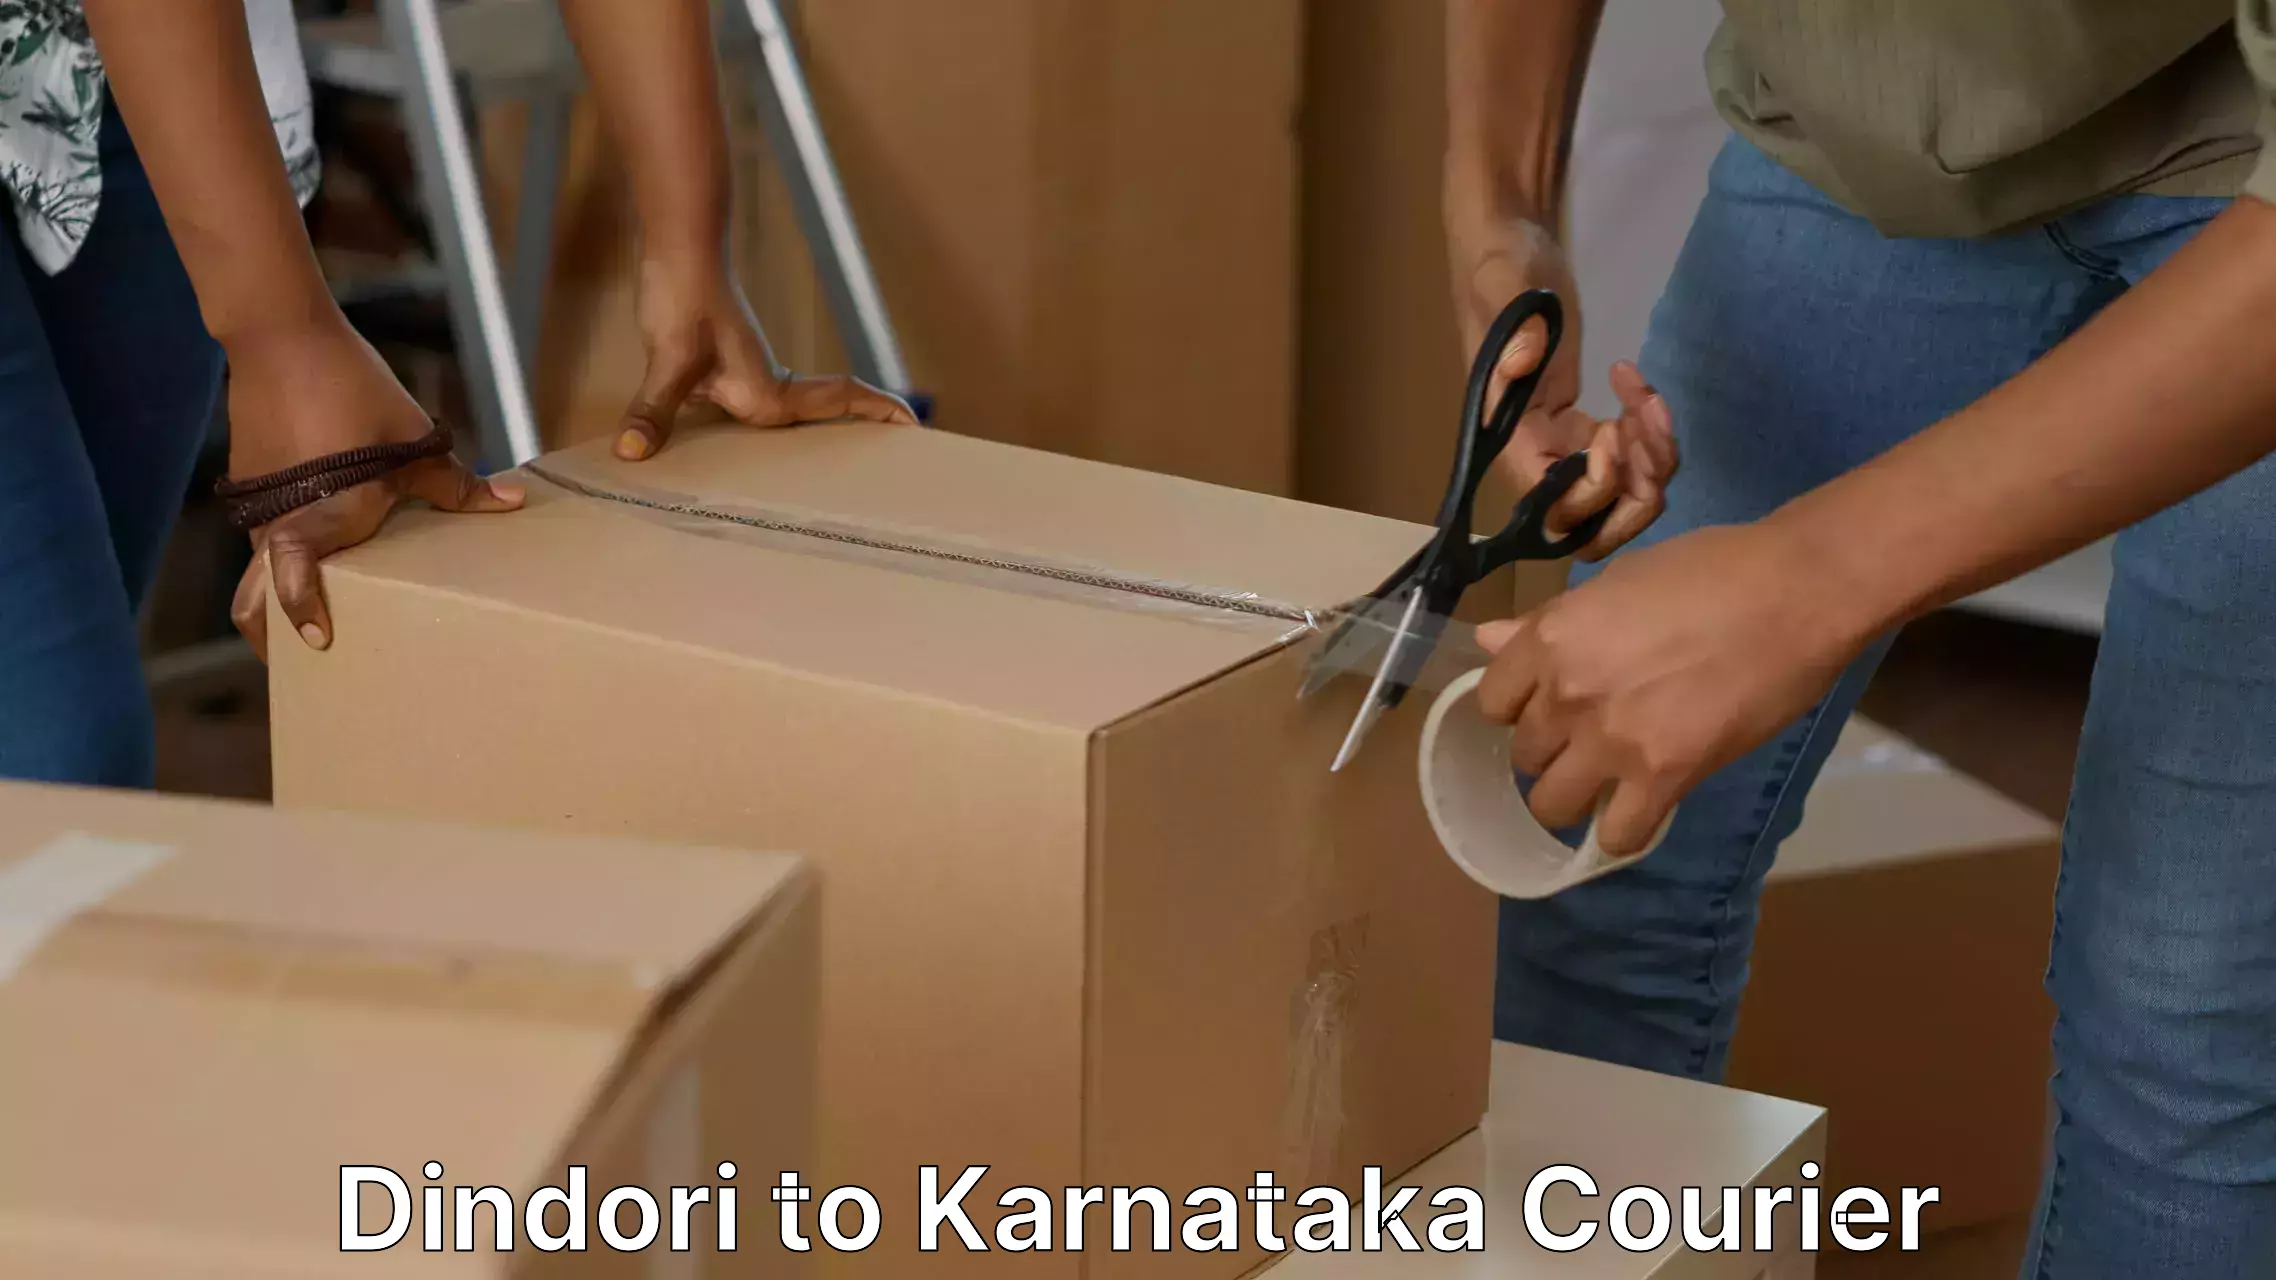 Furniture moving assistance Dindori to Karnataka